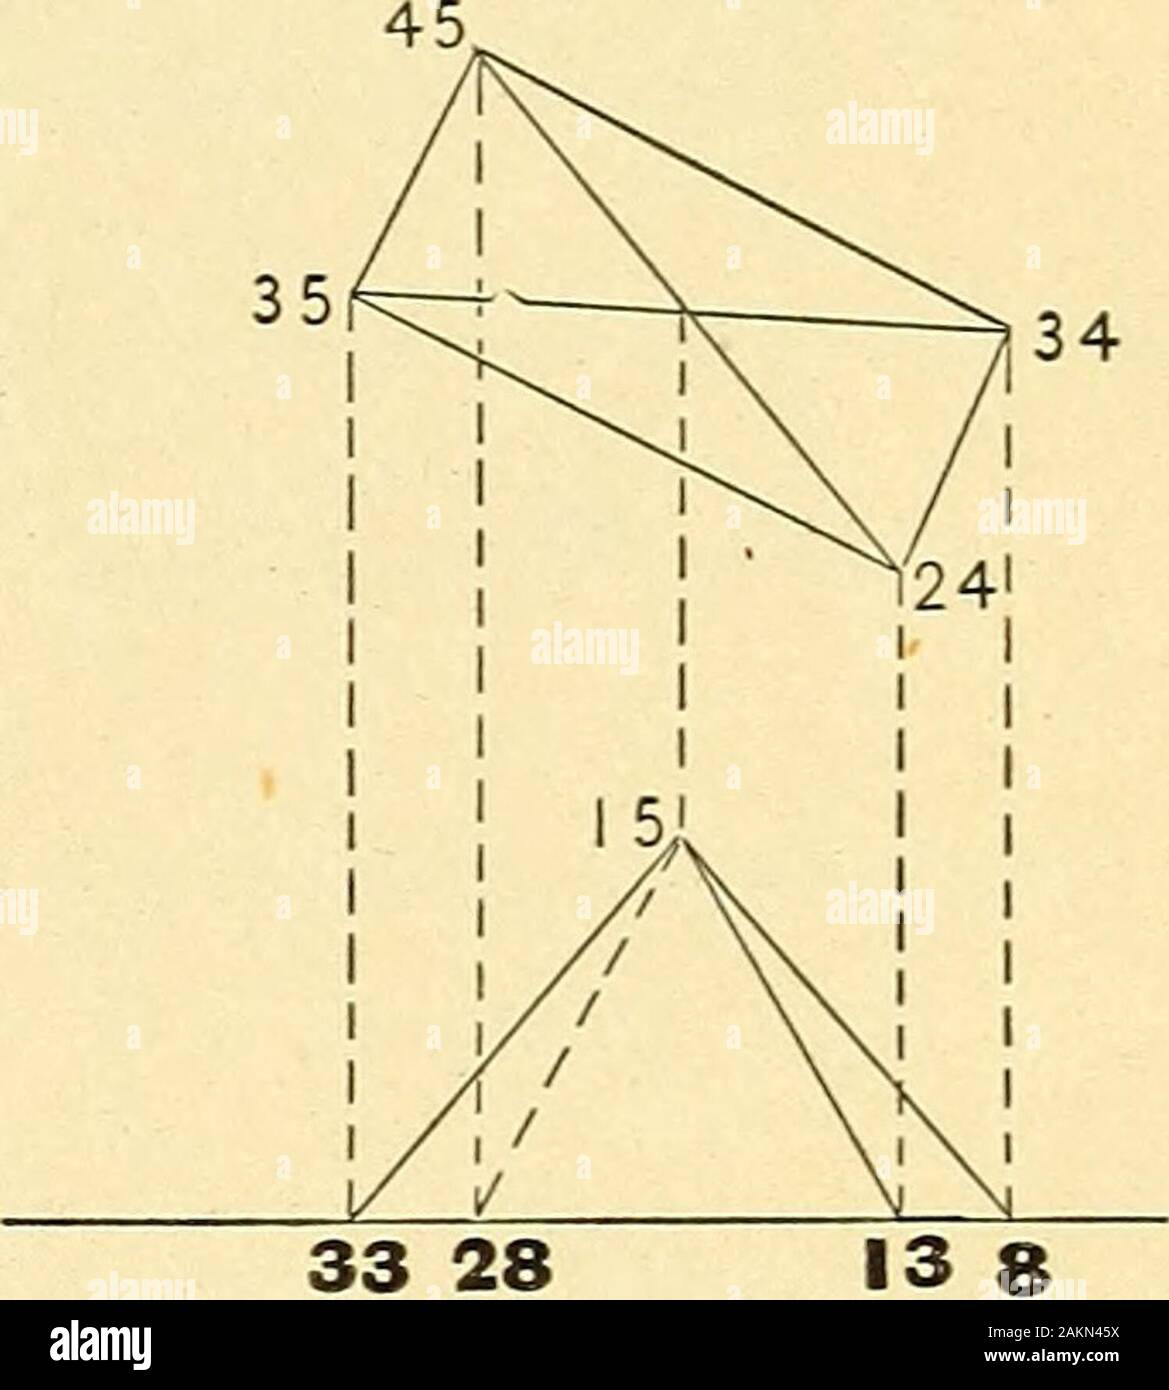 Géométrie descriptive . 33 problèmes 28 1-4. Déterminer la véritable taille de l'angle d'diedral entre les plans N et T. (Art. Problèmes 83-855-8. Déterminer la taille réelle de l'diedral angles des objets. (Arts. Pages 83-85, pages, 57,57, 58.) L'unité de mesure, le J de pouce. L'espace requis pour chaque problème, 2 x 3 pouces. Angles entre GL et des traces de p| A-fC 1Qplanes, multiples de 15°. Les mesures effectuées par GL, compte tenu du type et du côté droit de la ligne de division, de type lourd. "-A-t-il. O 1 l4 2 8 4 ^-^ ^^^^ J 7 6 12/ 612/^ ^ 78 . 8 /16/ / ^y^ ^^ S 9 vs . 10 11 J'^S , 12 HS ^^ c * 0 //S ^ 1 Déterminer l'un Banque D'Images